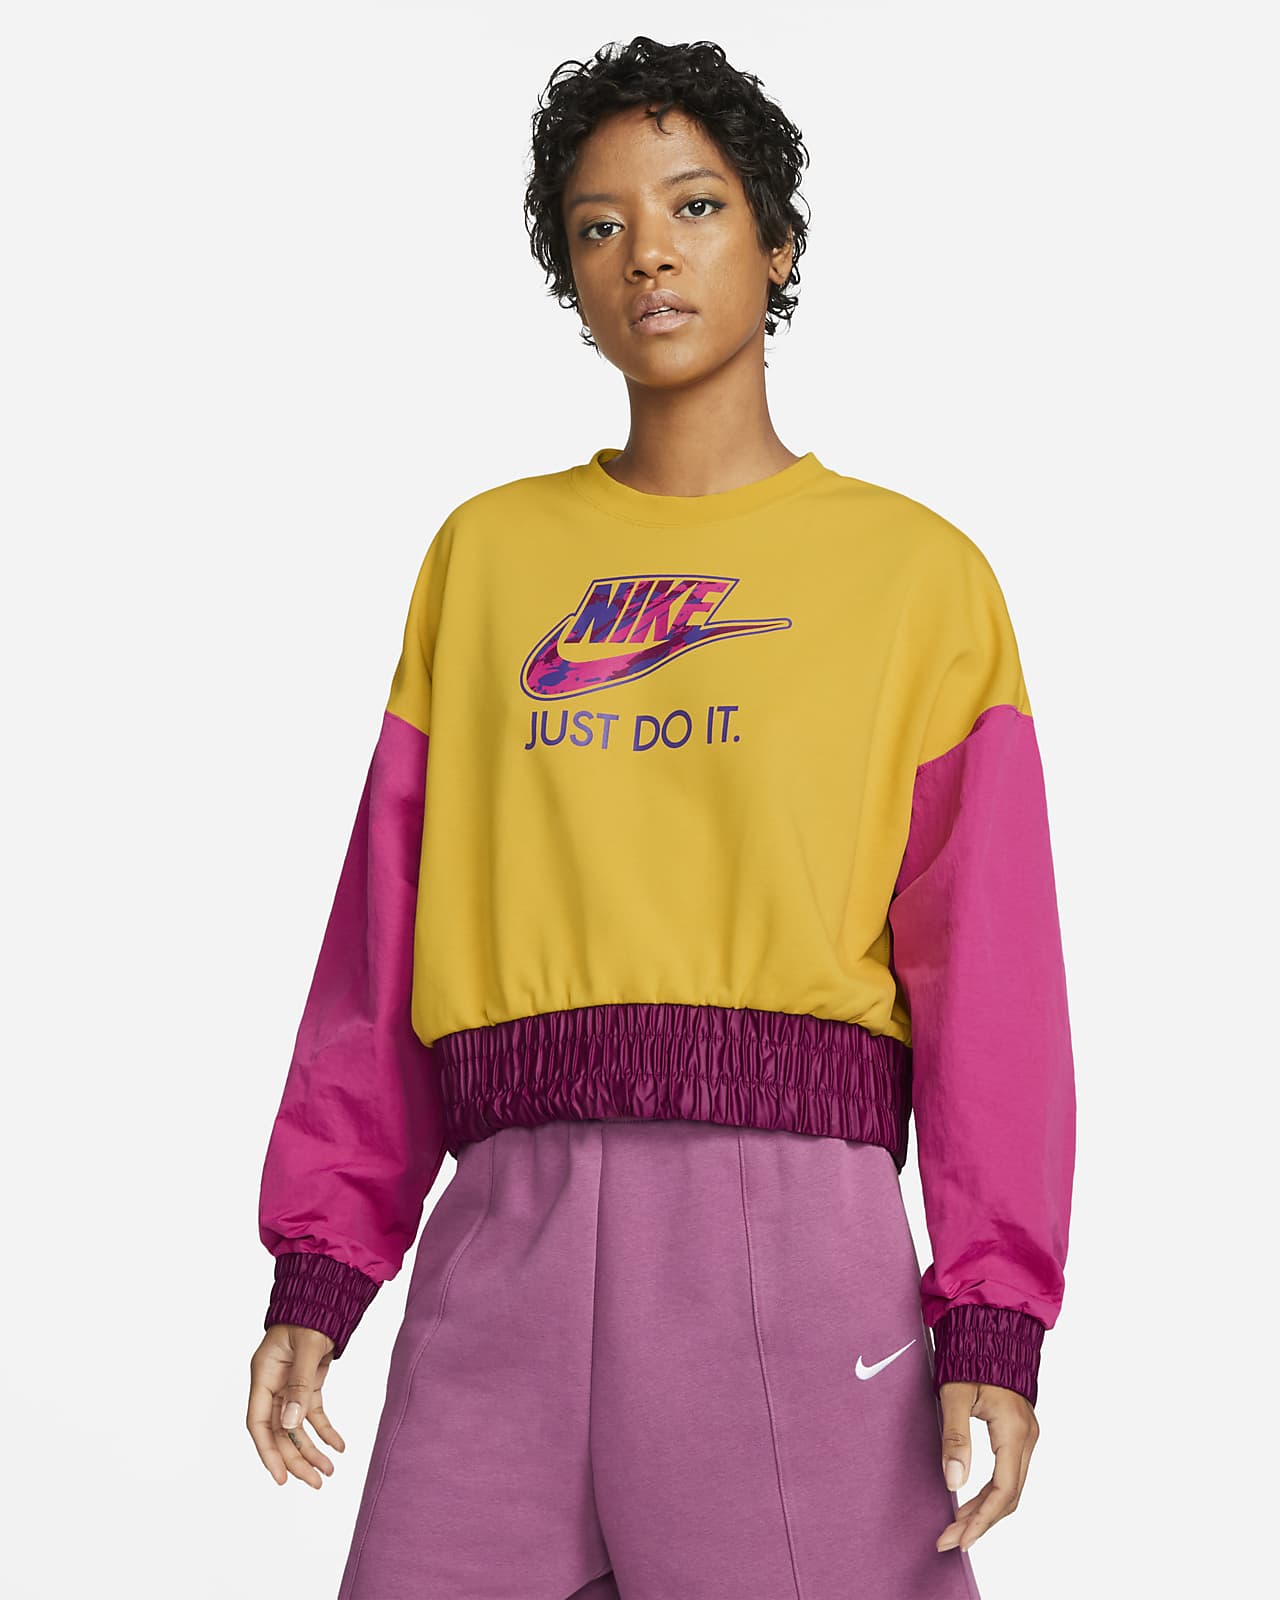 Nike Sportswear Women's Oversized Fleece Crew Top